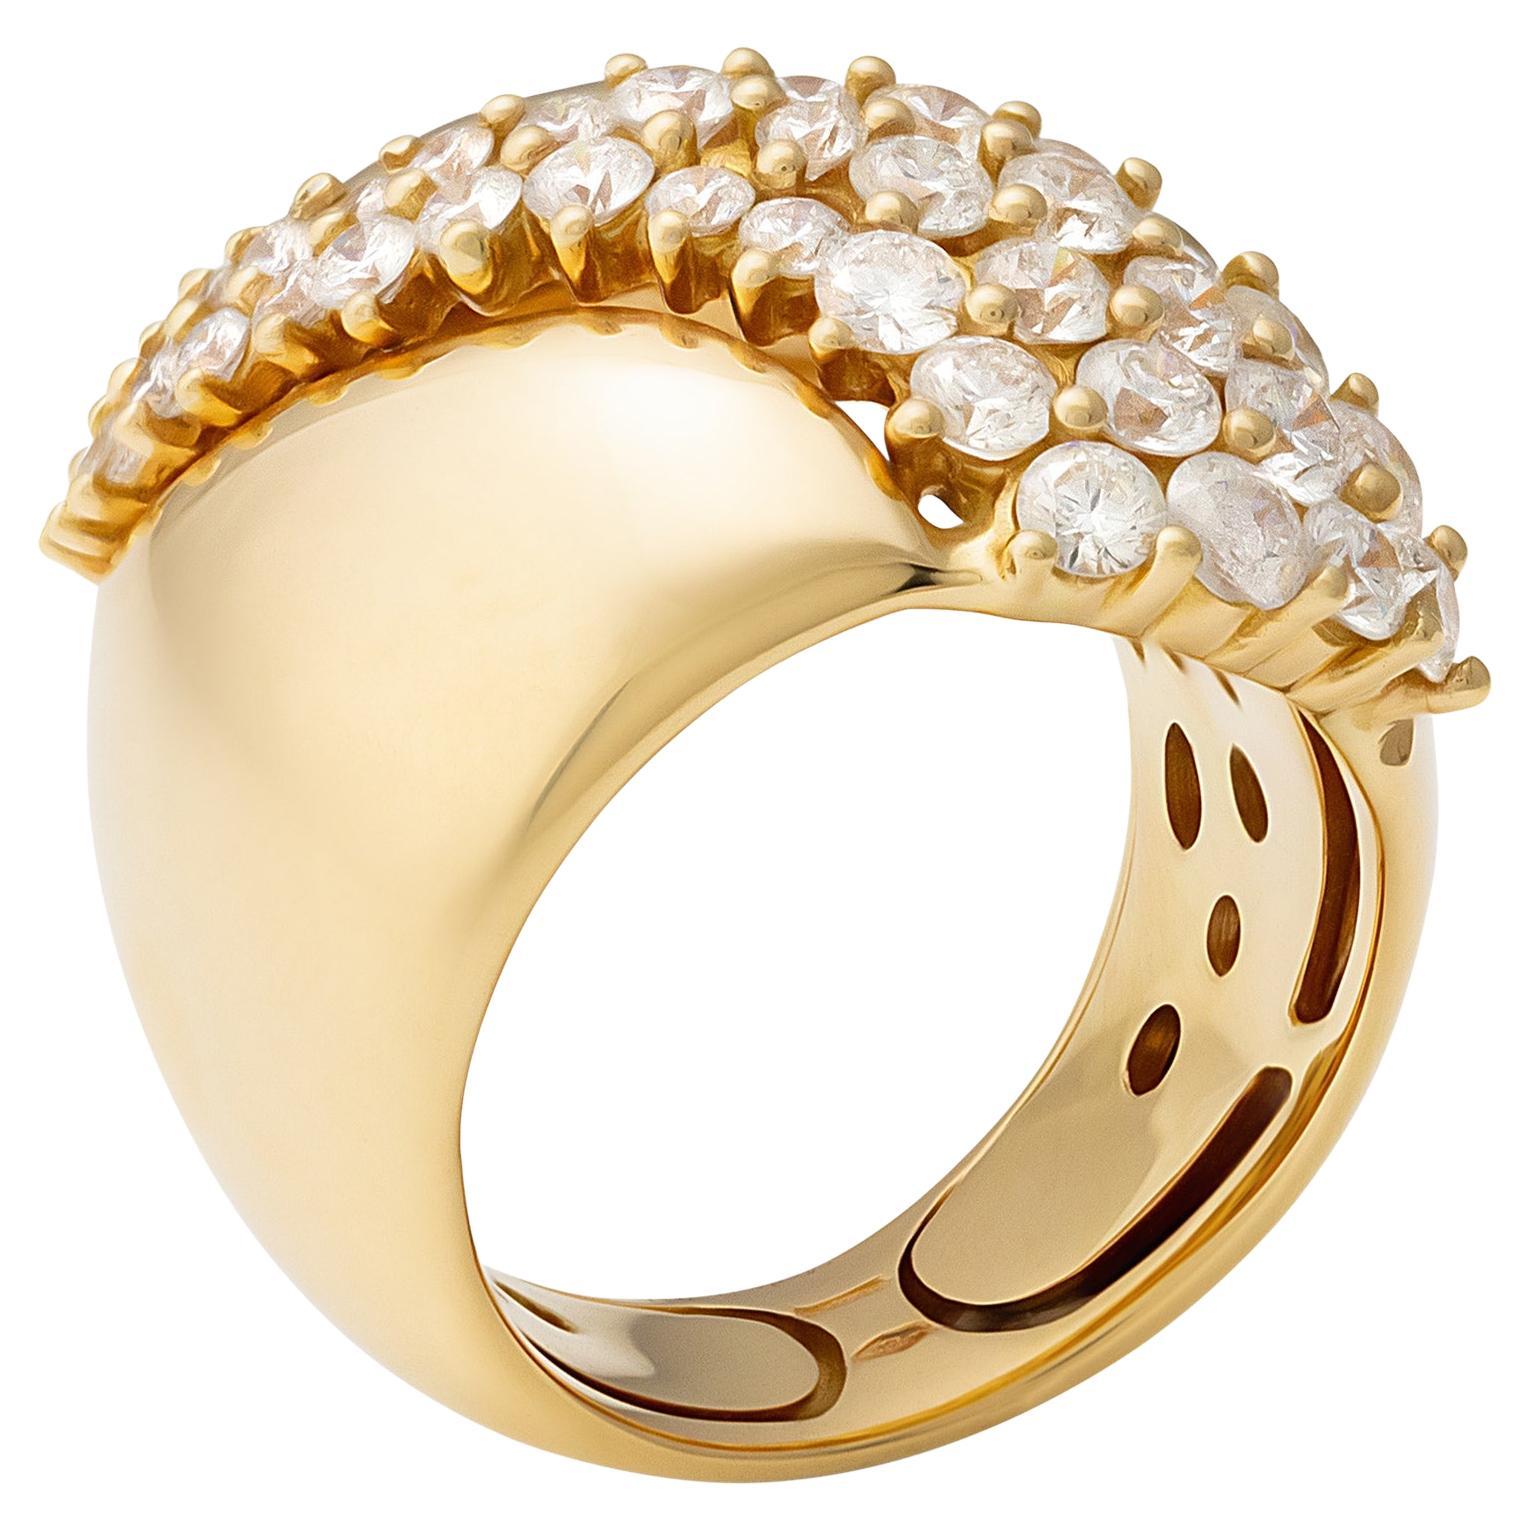 Stefan Hafner 18K Yellow Gold 1.98ct Diamond Ring For Sale